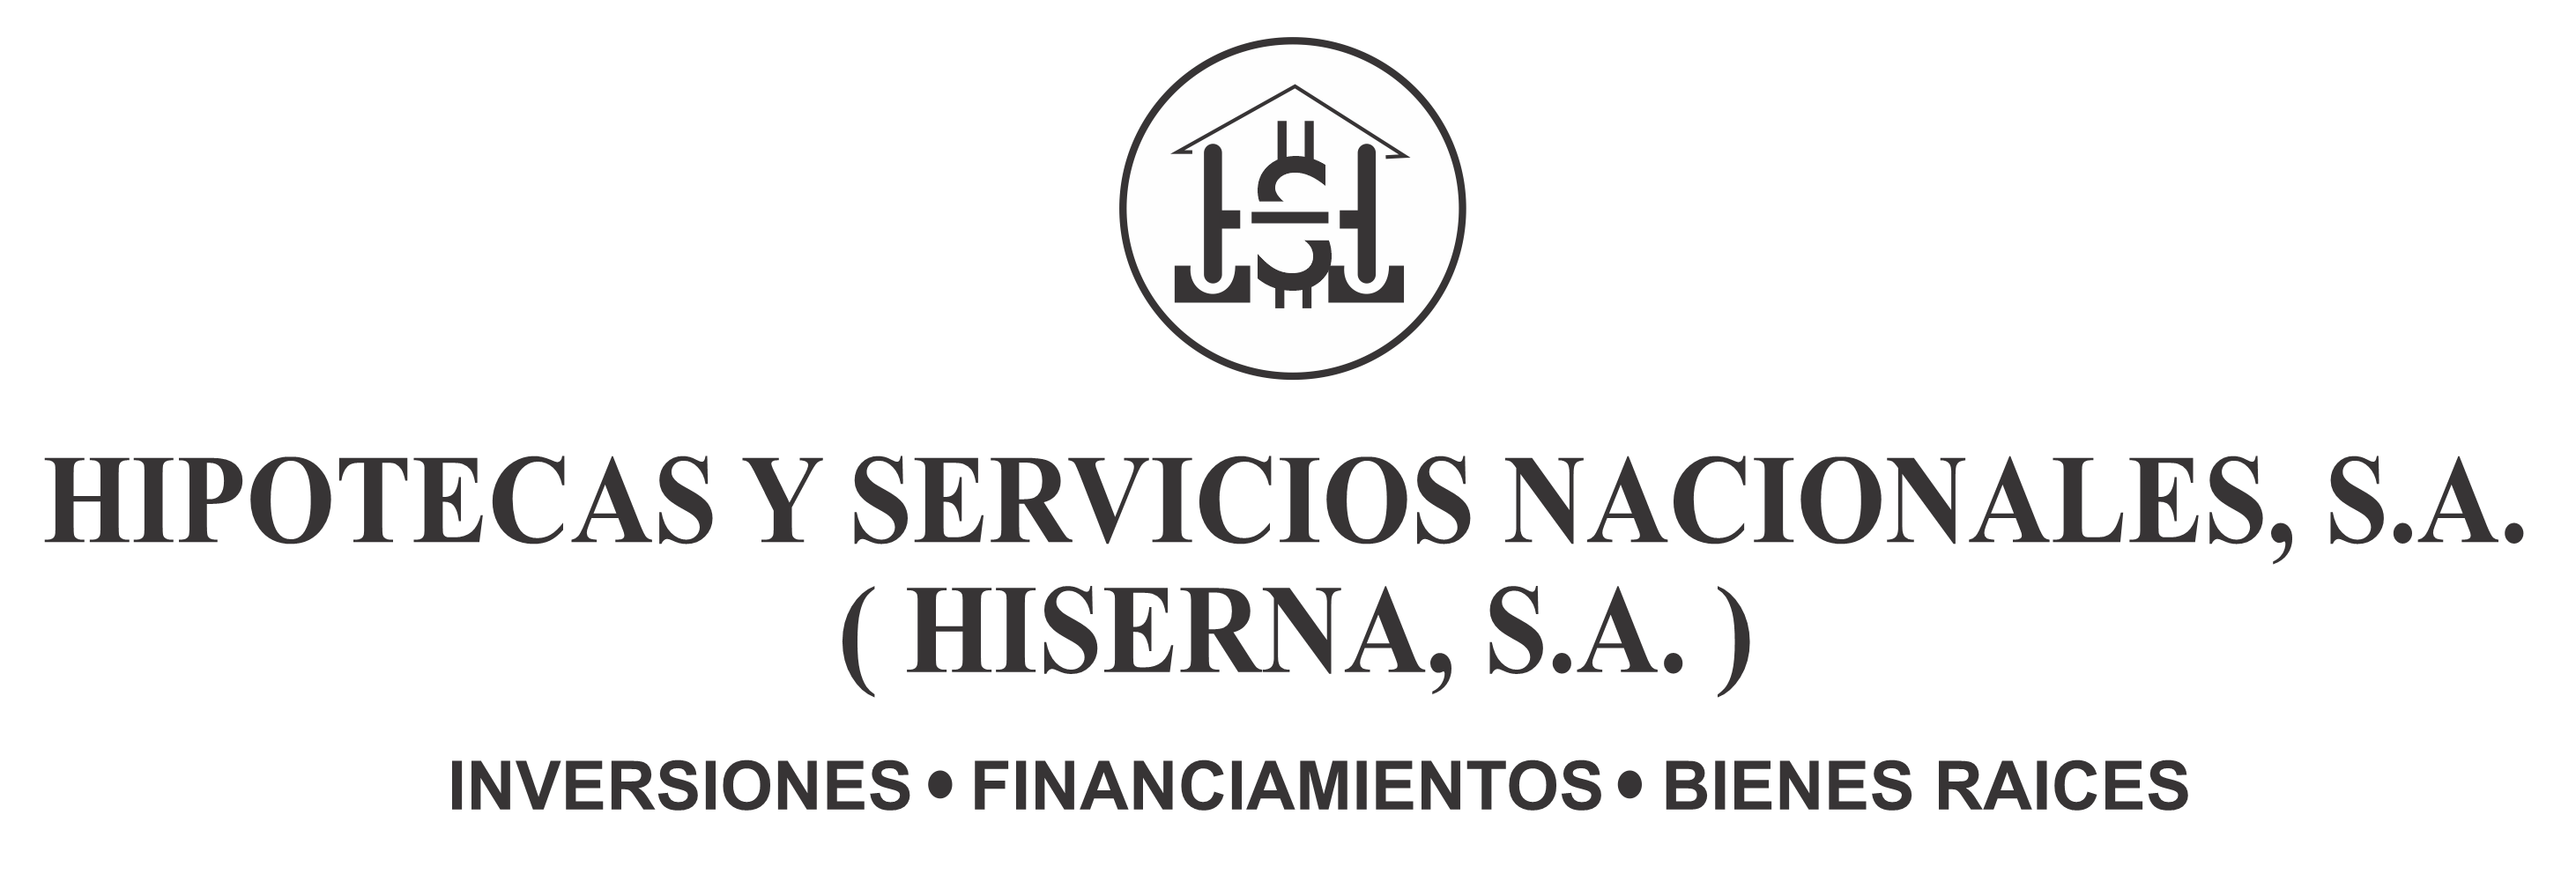 HIPOTECAS Y SERVICIOS NACIONALES